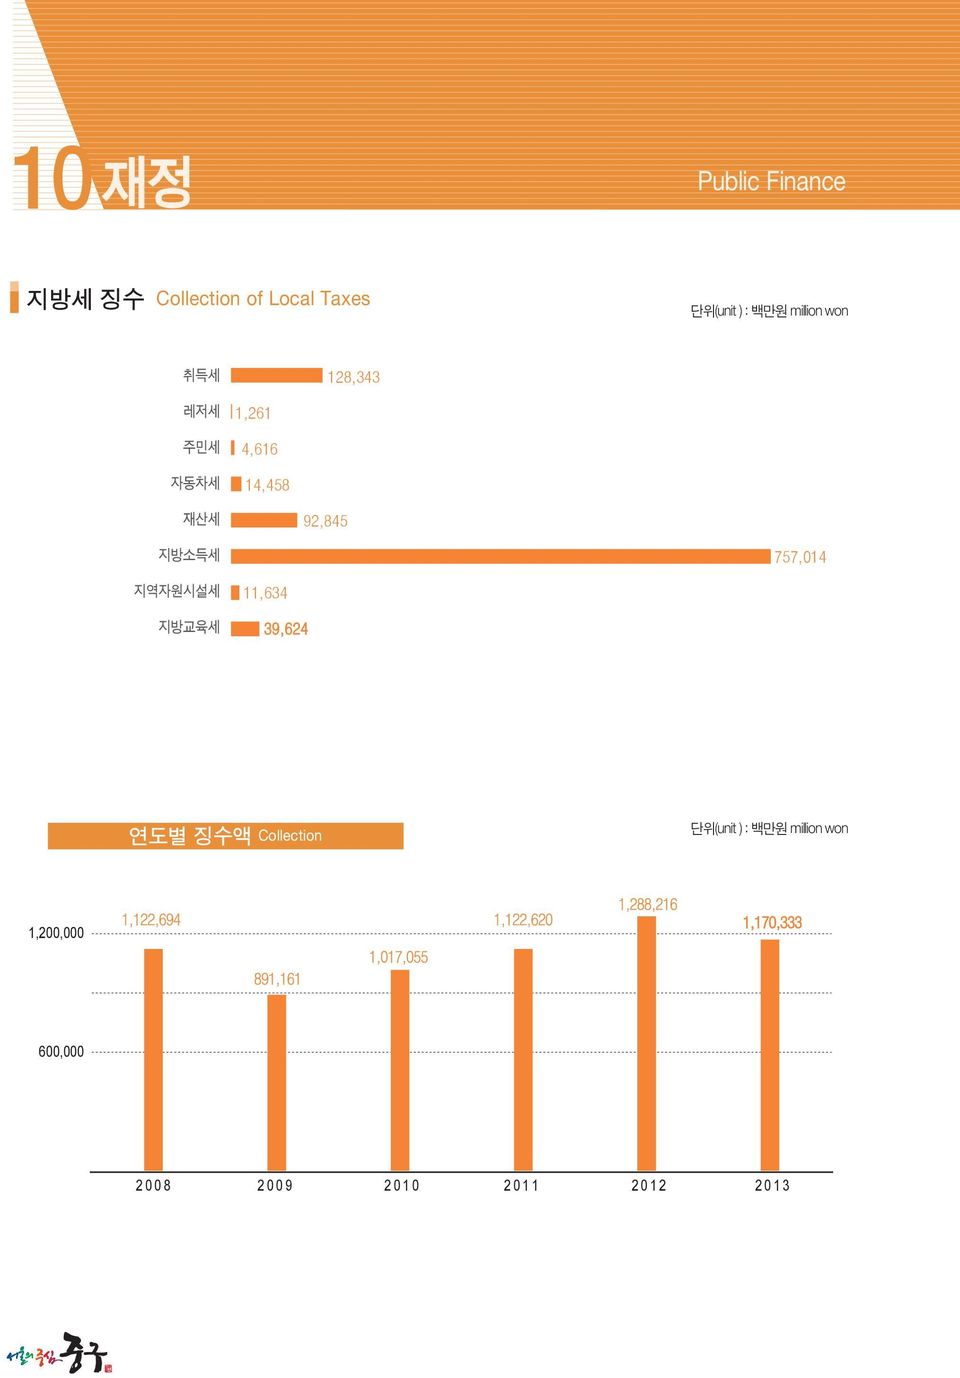 11,634 39,624 연도별 징수액 Collection 단위(unit ) : 백만원 million won